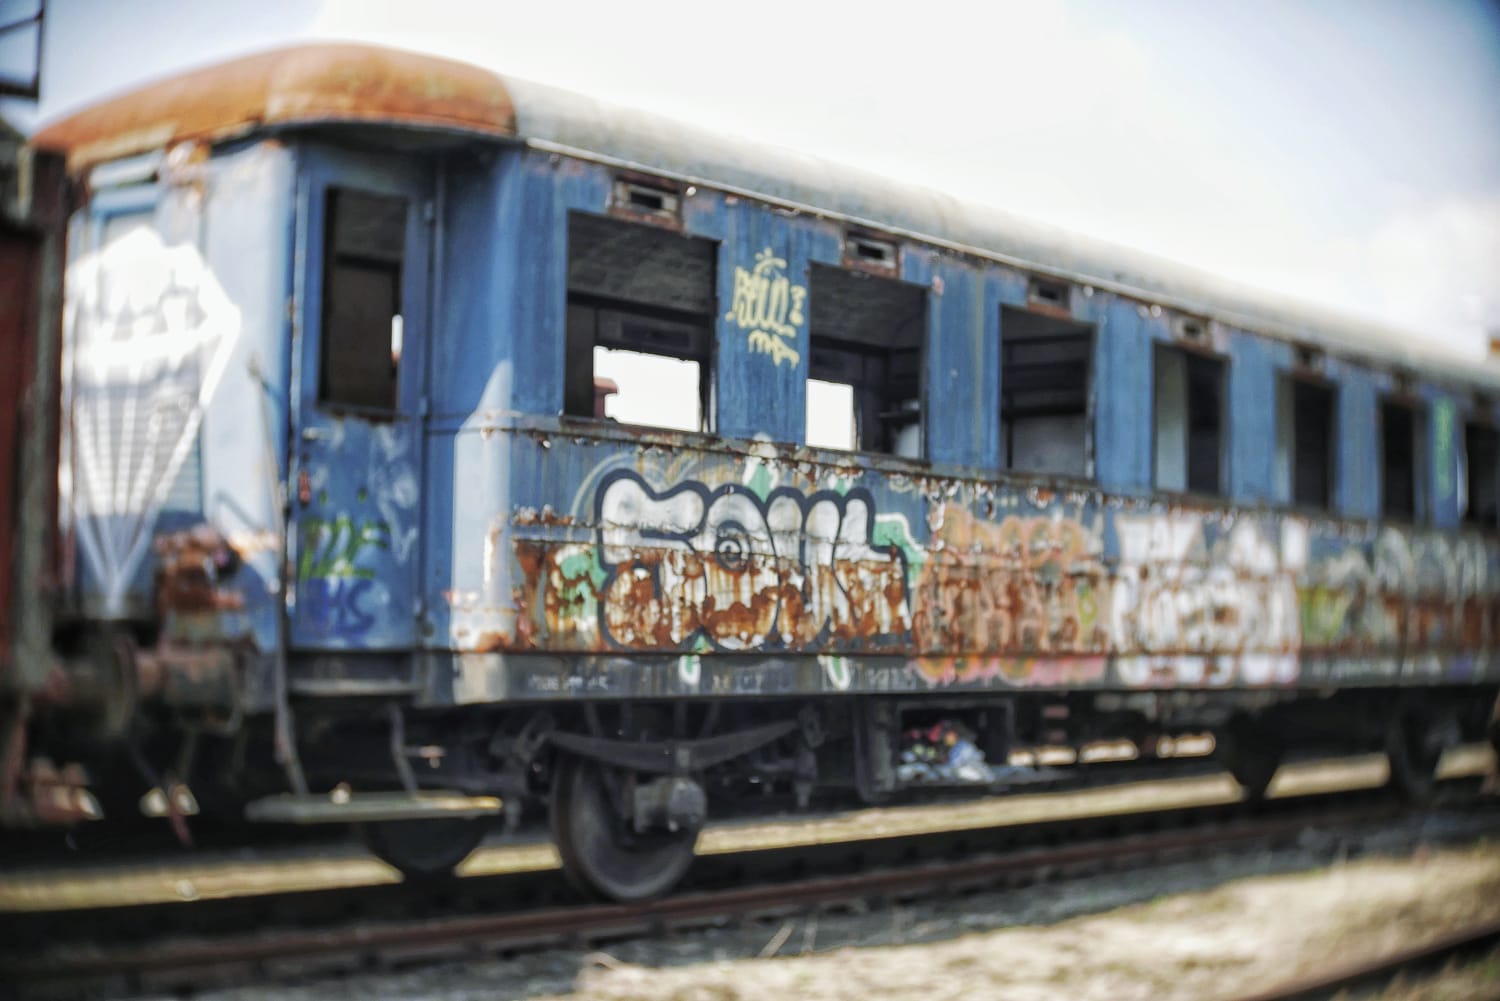 Abandoned train with graffiti